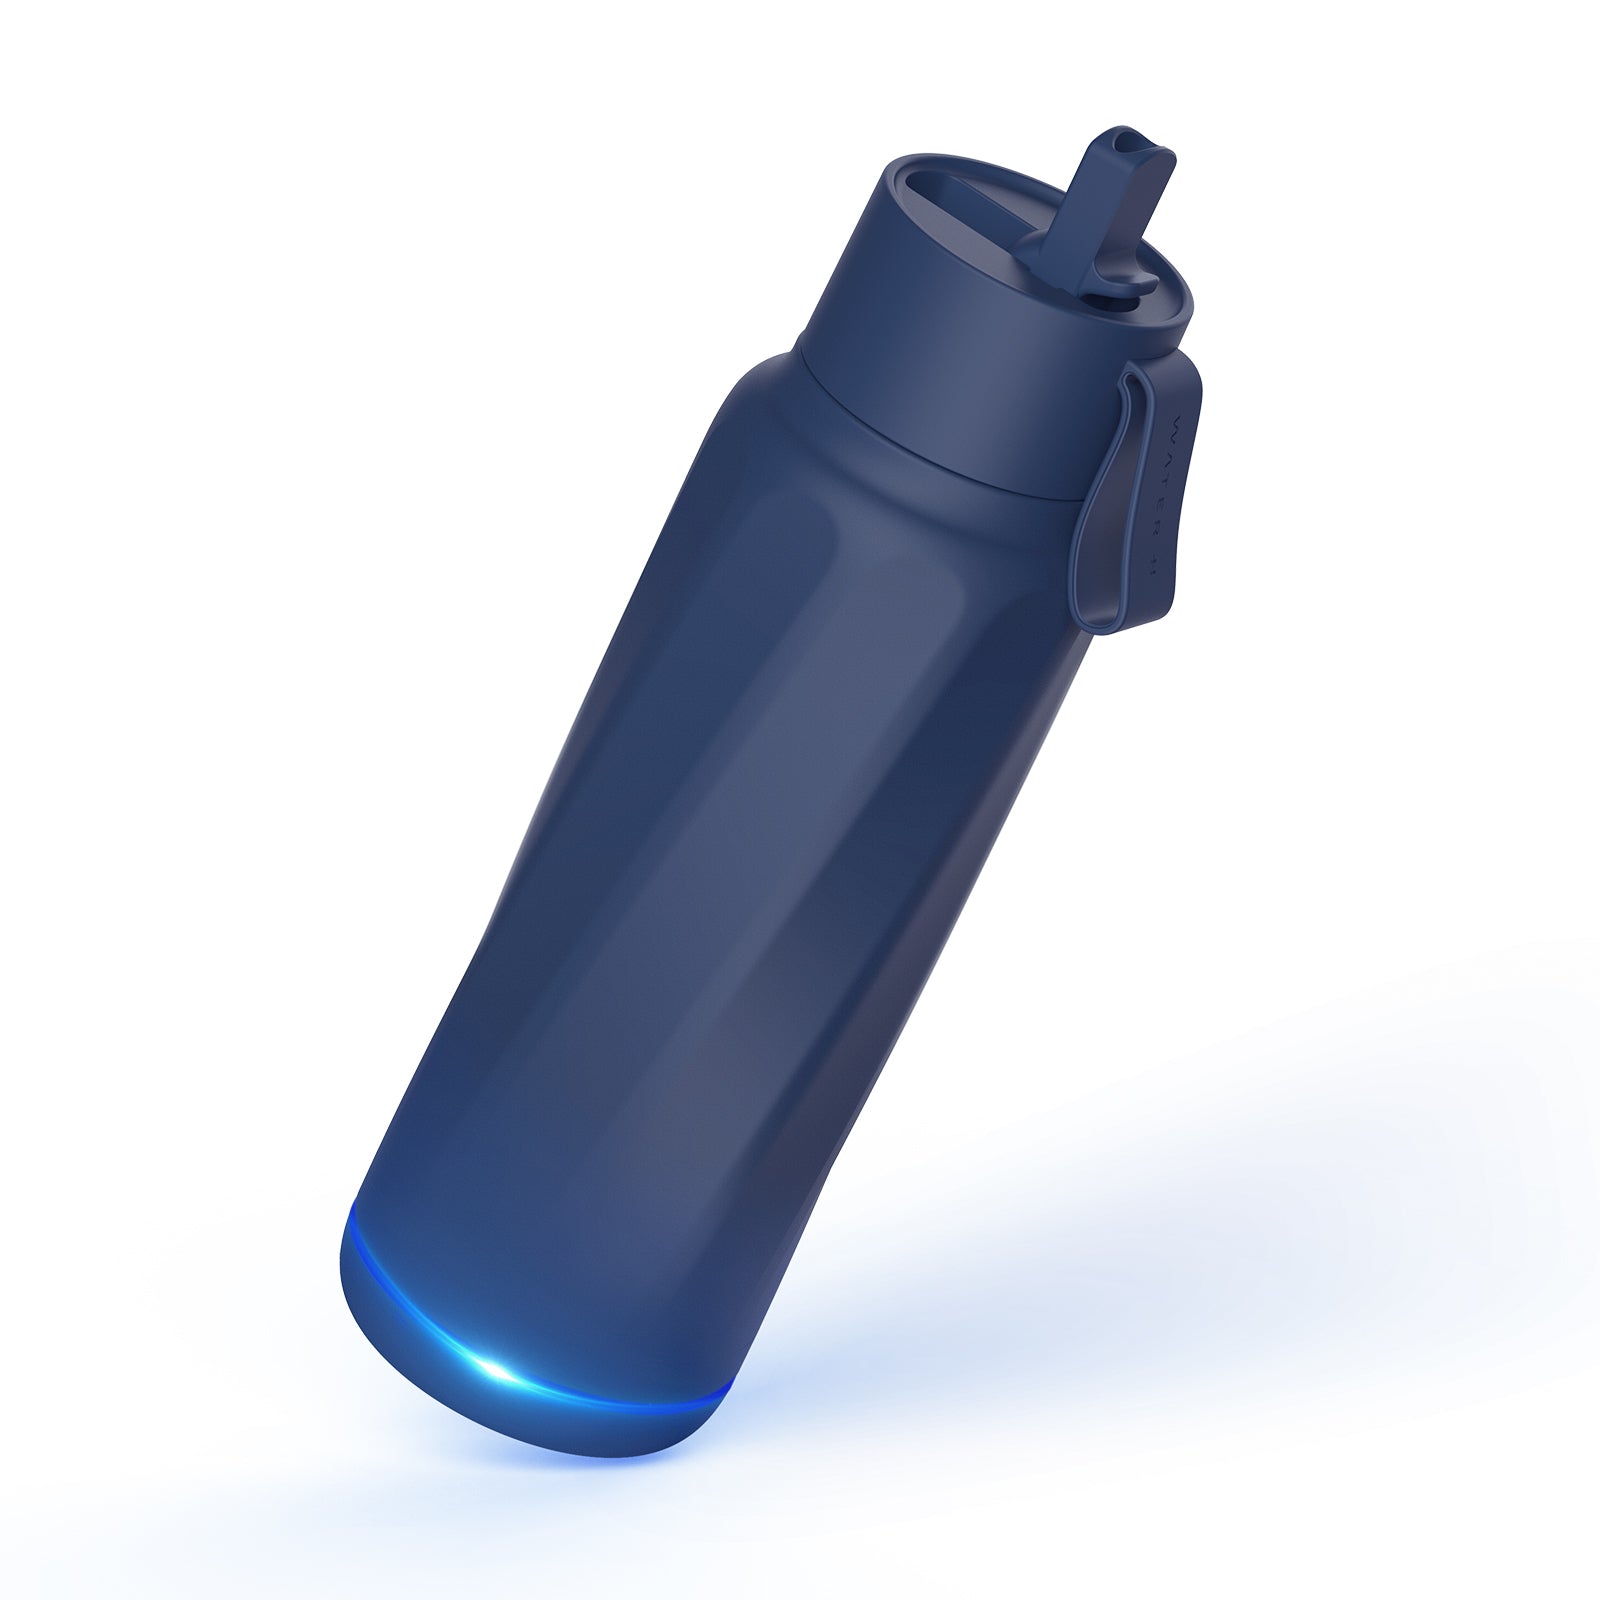 Bluey 12 oz water bottle – BSY Designs